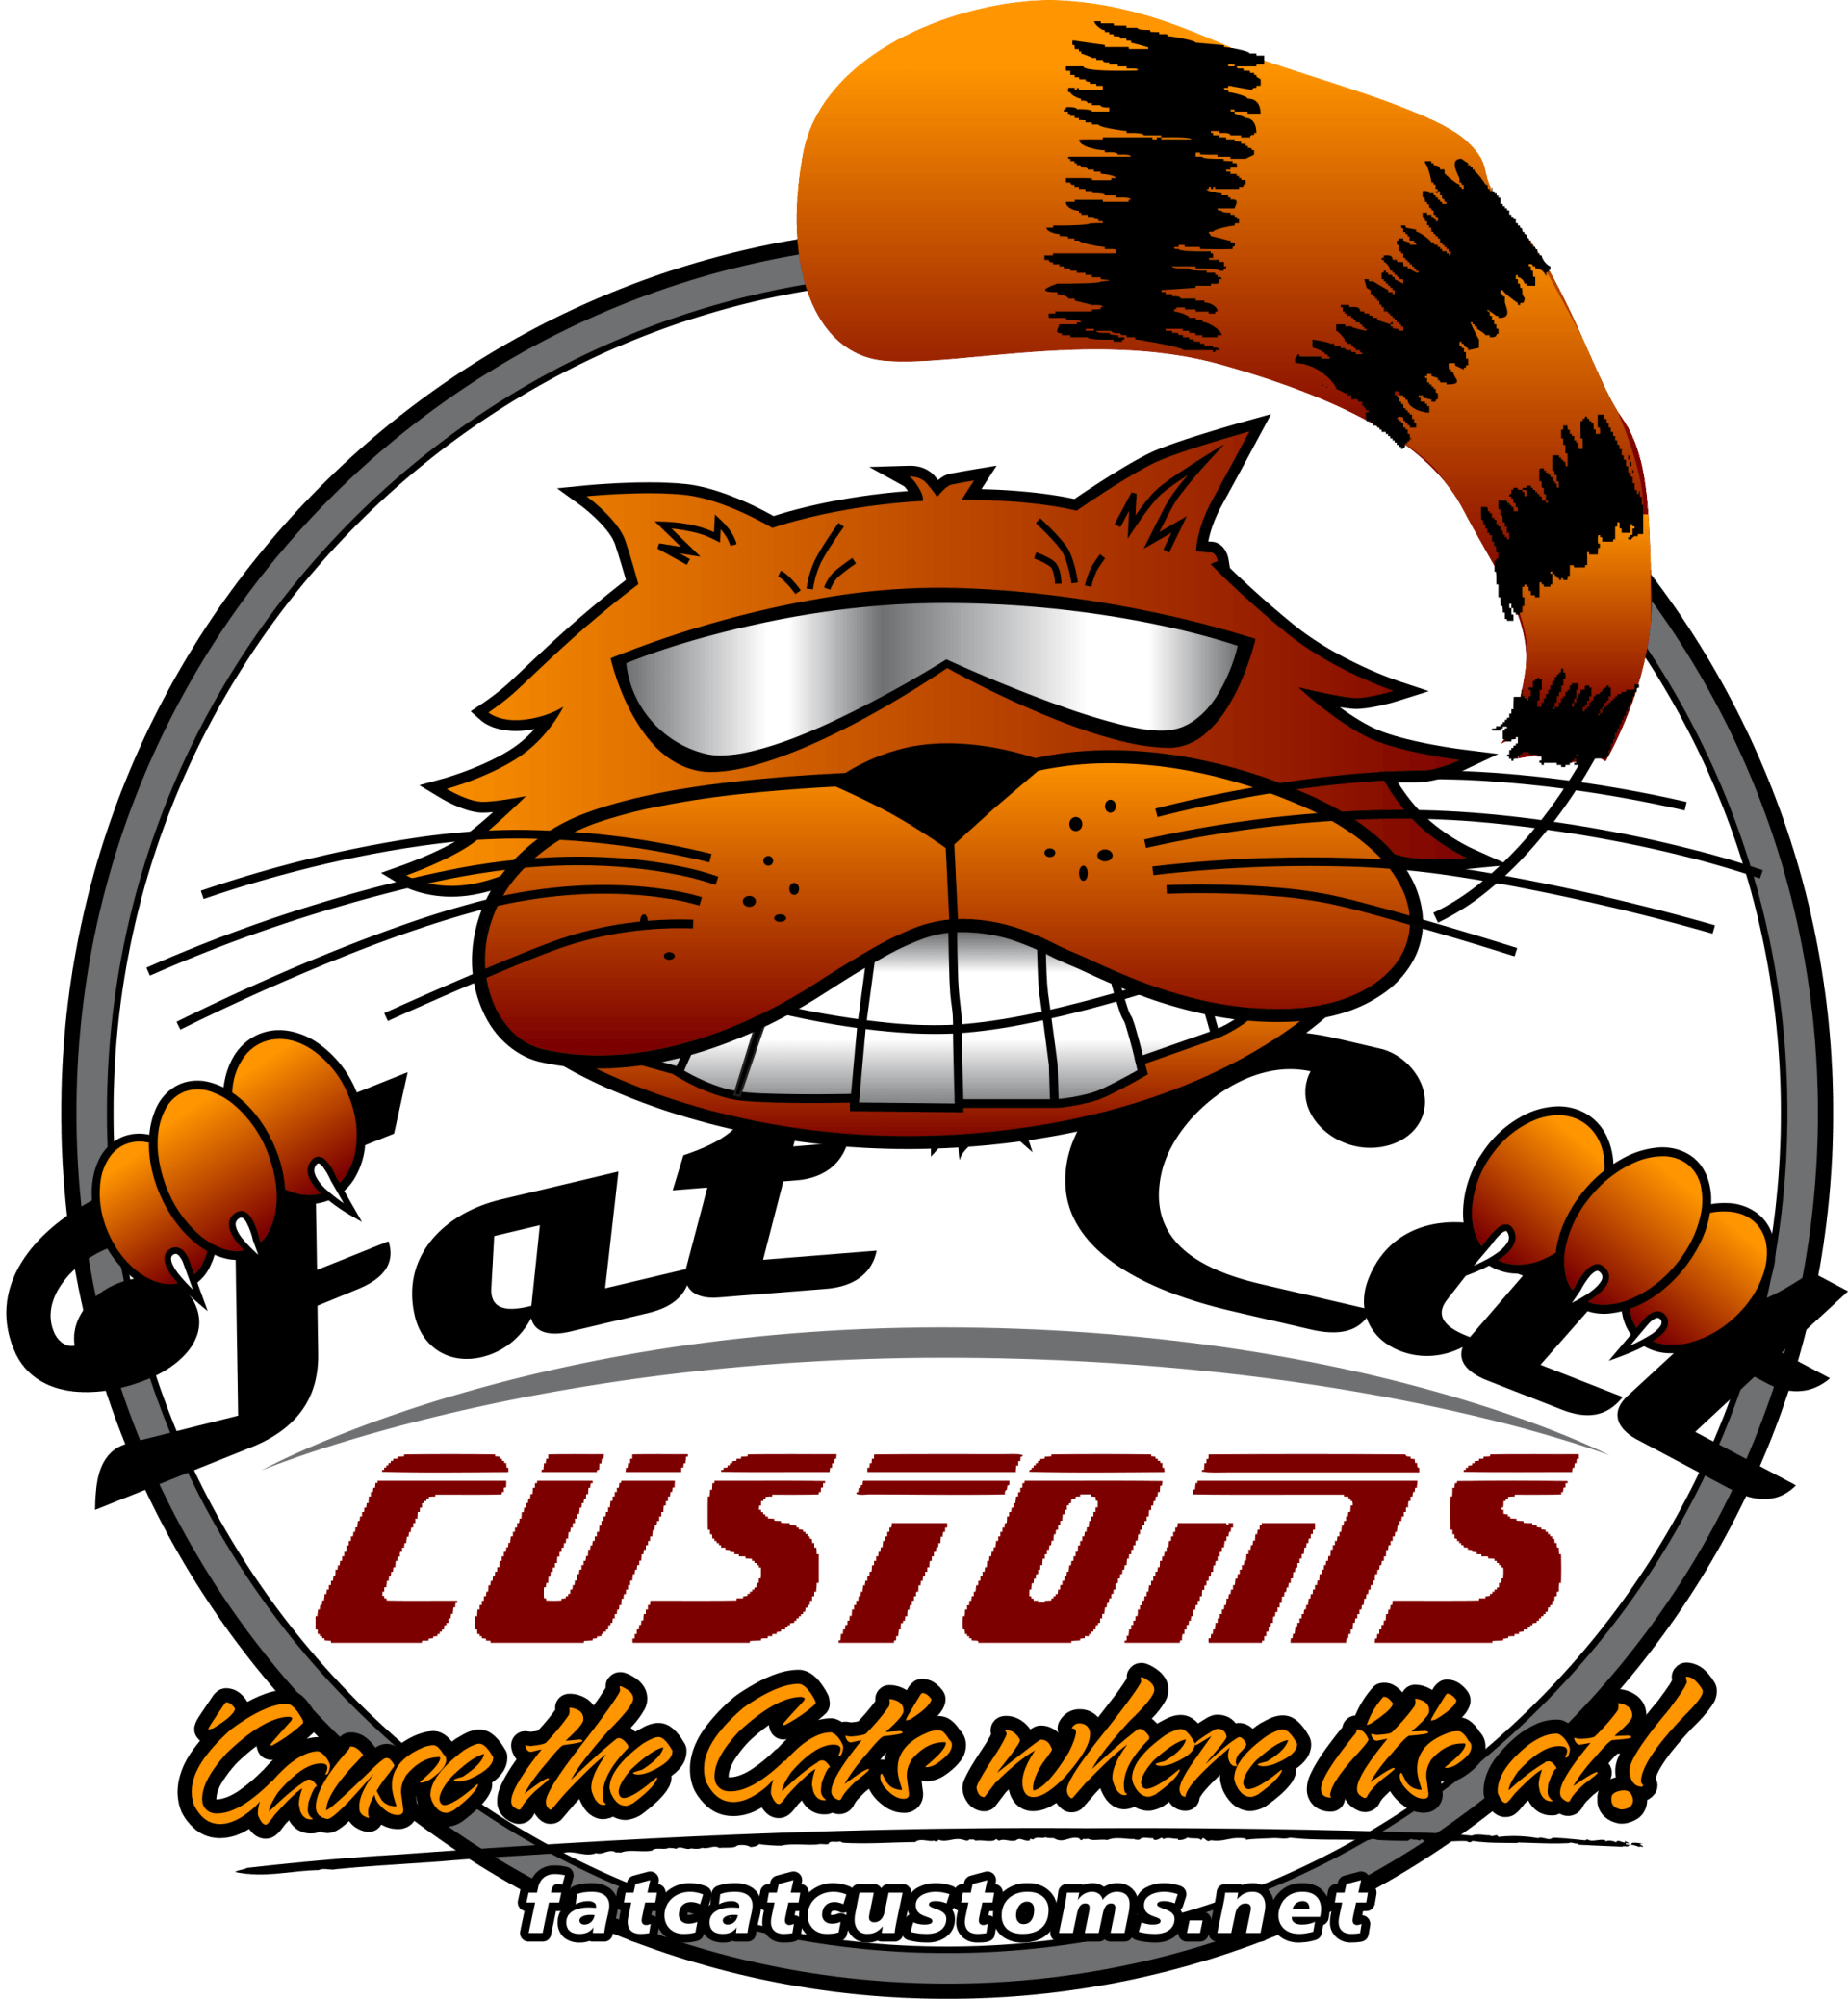 Fat Cat Customs